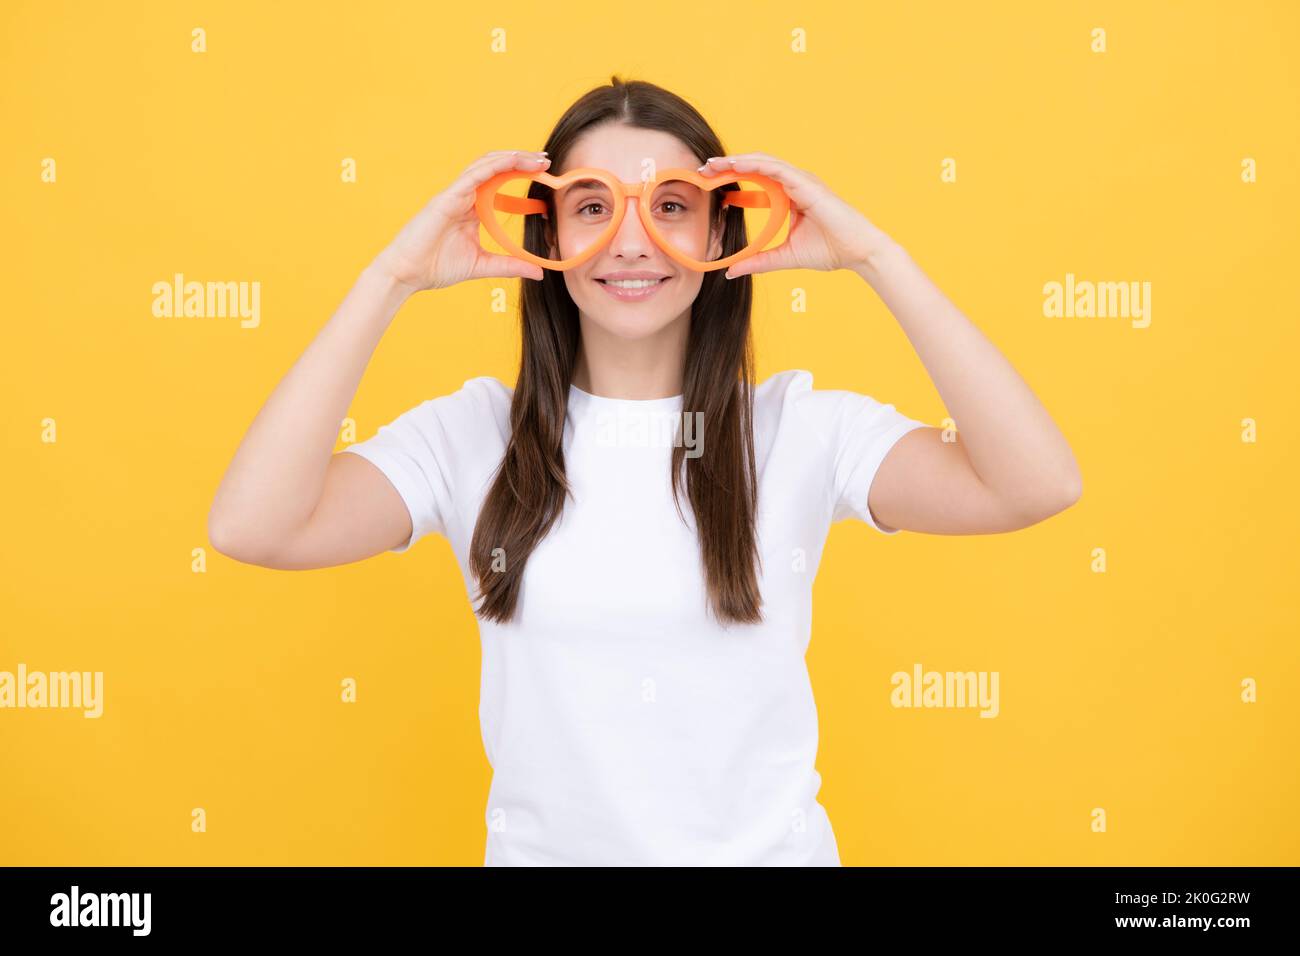 Portrait eines lustigen Mädchens mit coolen Partybrillen. Fröhliches junges Mädchen lächelt mit herzförmigen Gläsern auf gelbem Hintergrund. Stockfoto